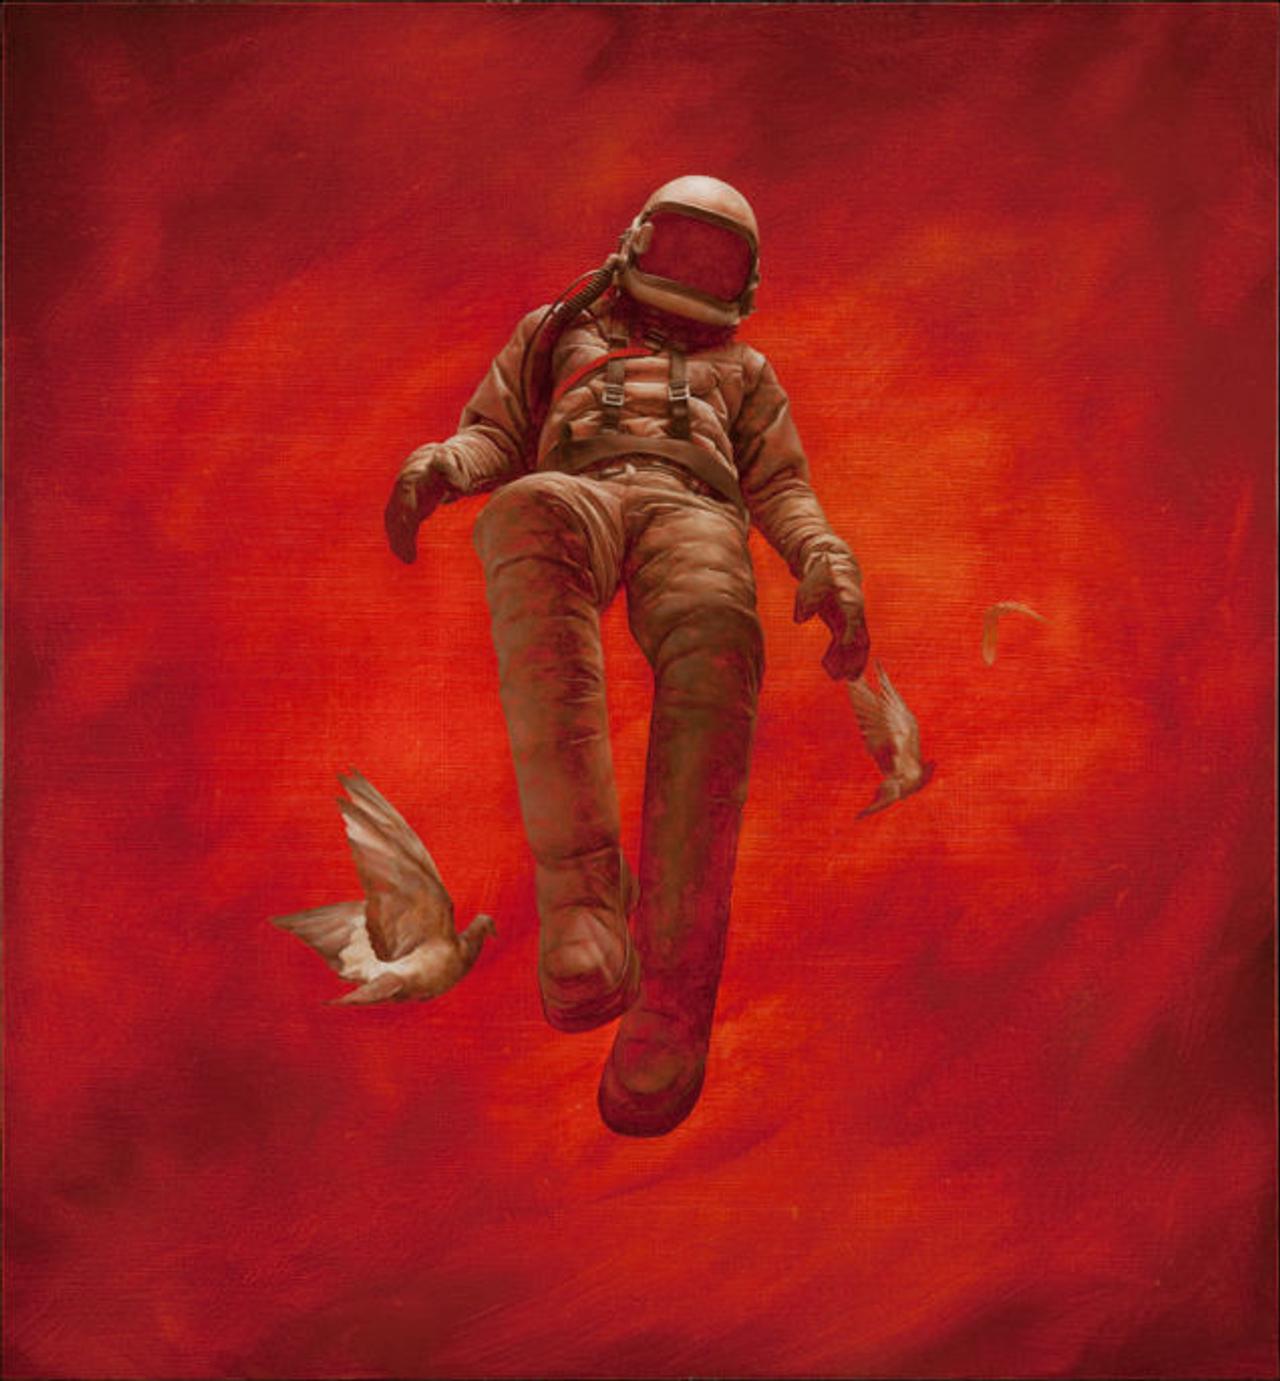 なぜかゆっくり動いて見えるシュルレアリスム作品｢墜ちる宇宙飛行士｣